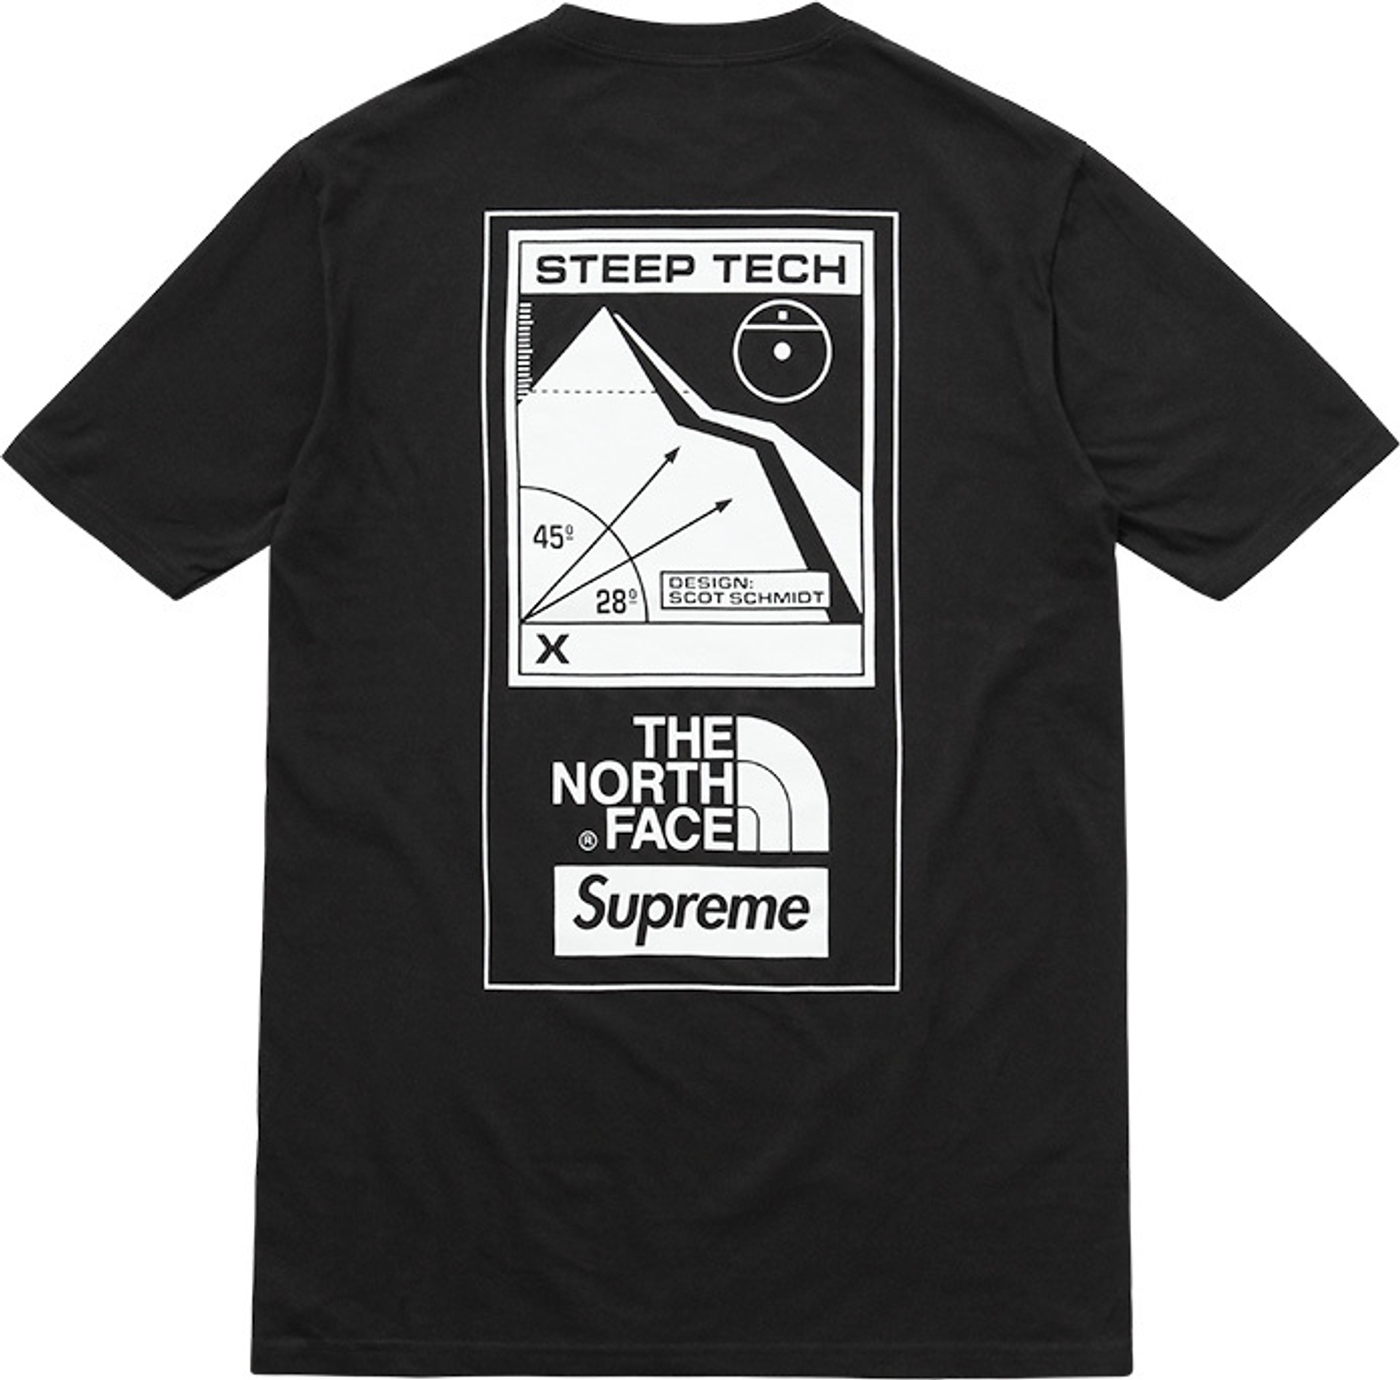 Steep Tech T-Shirt (8/11)